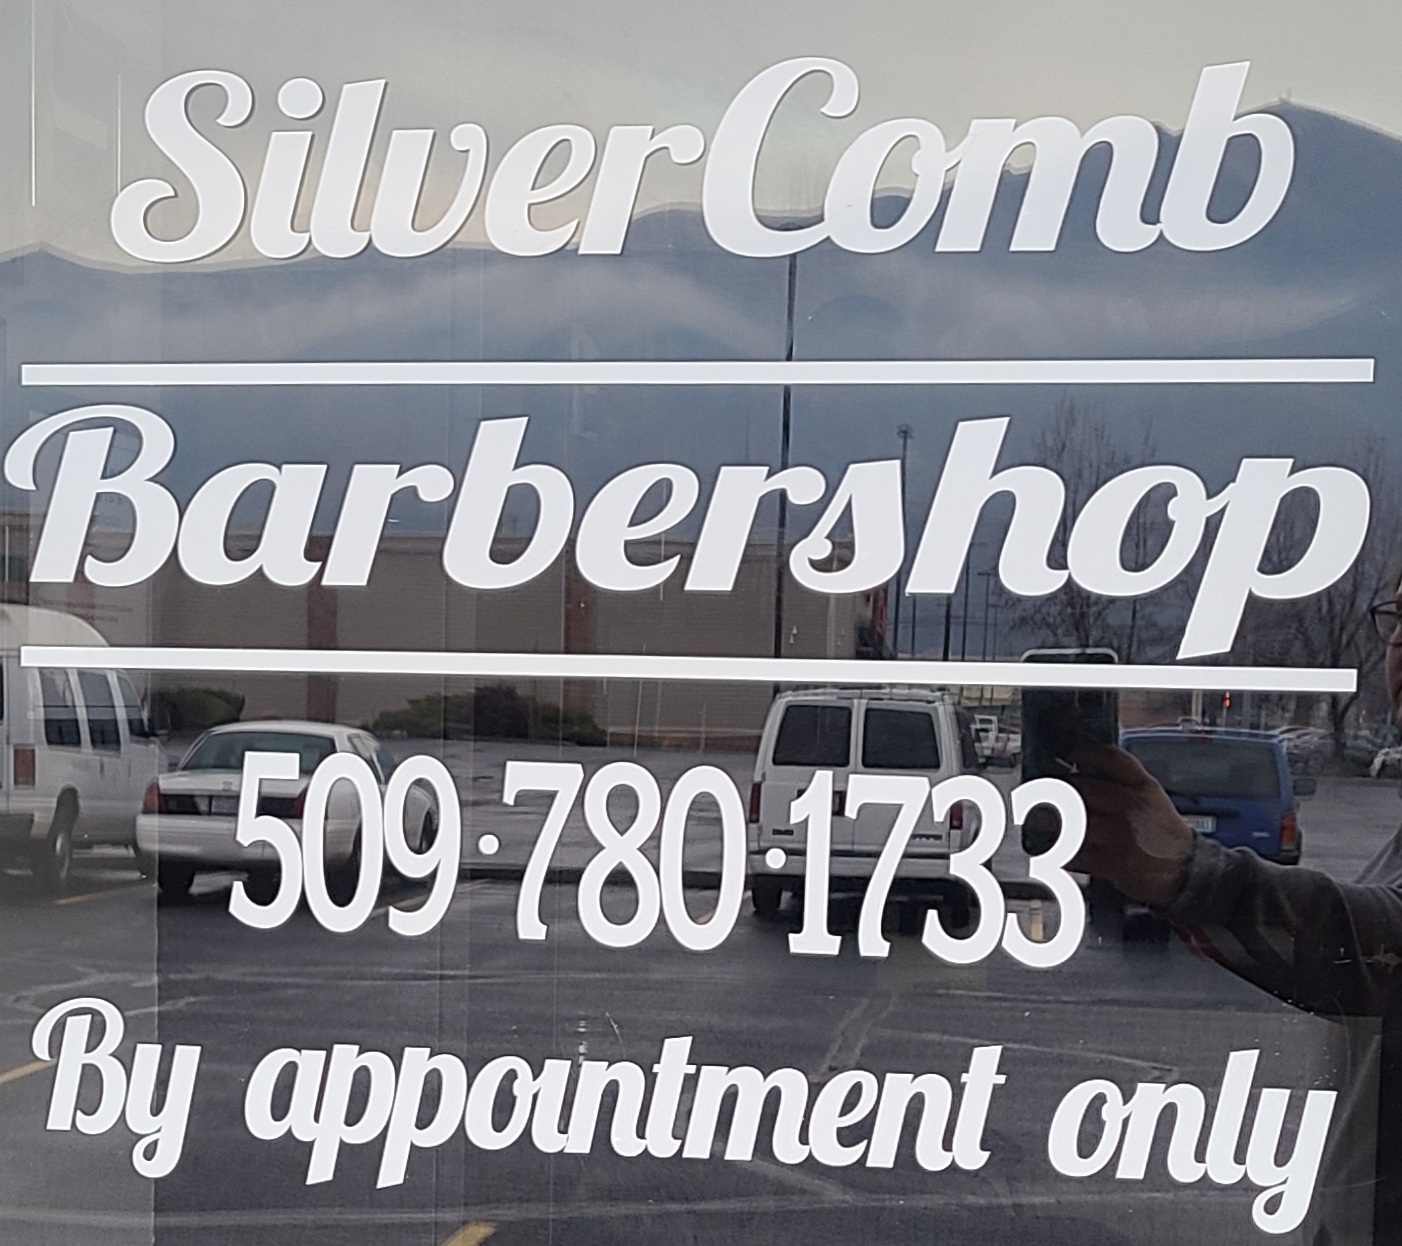 Silver Comb Barbershop